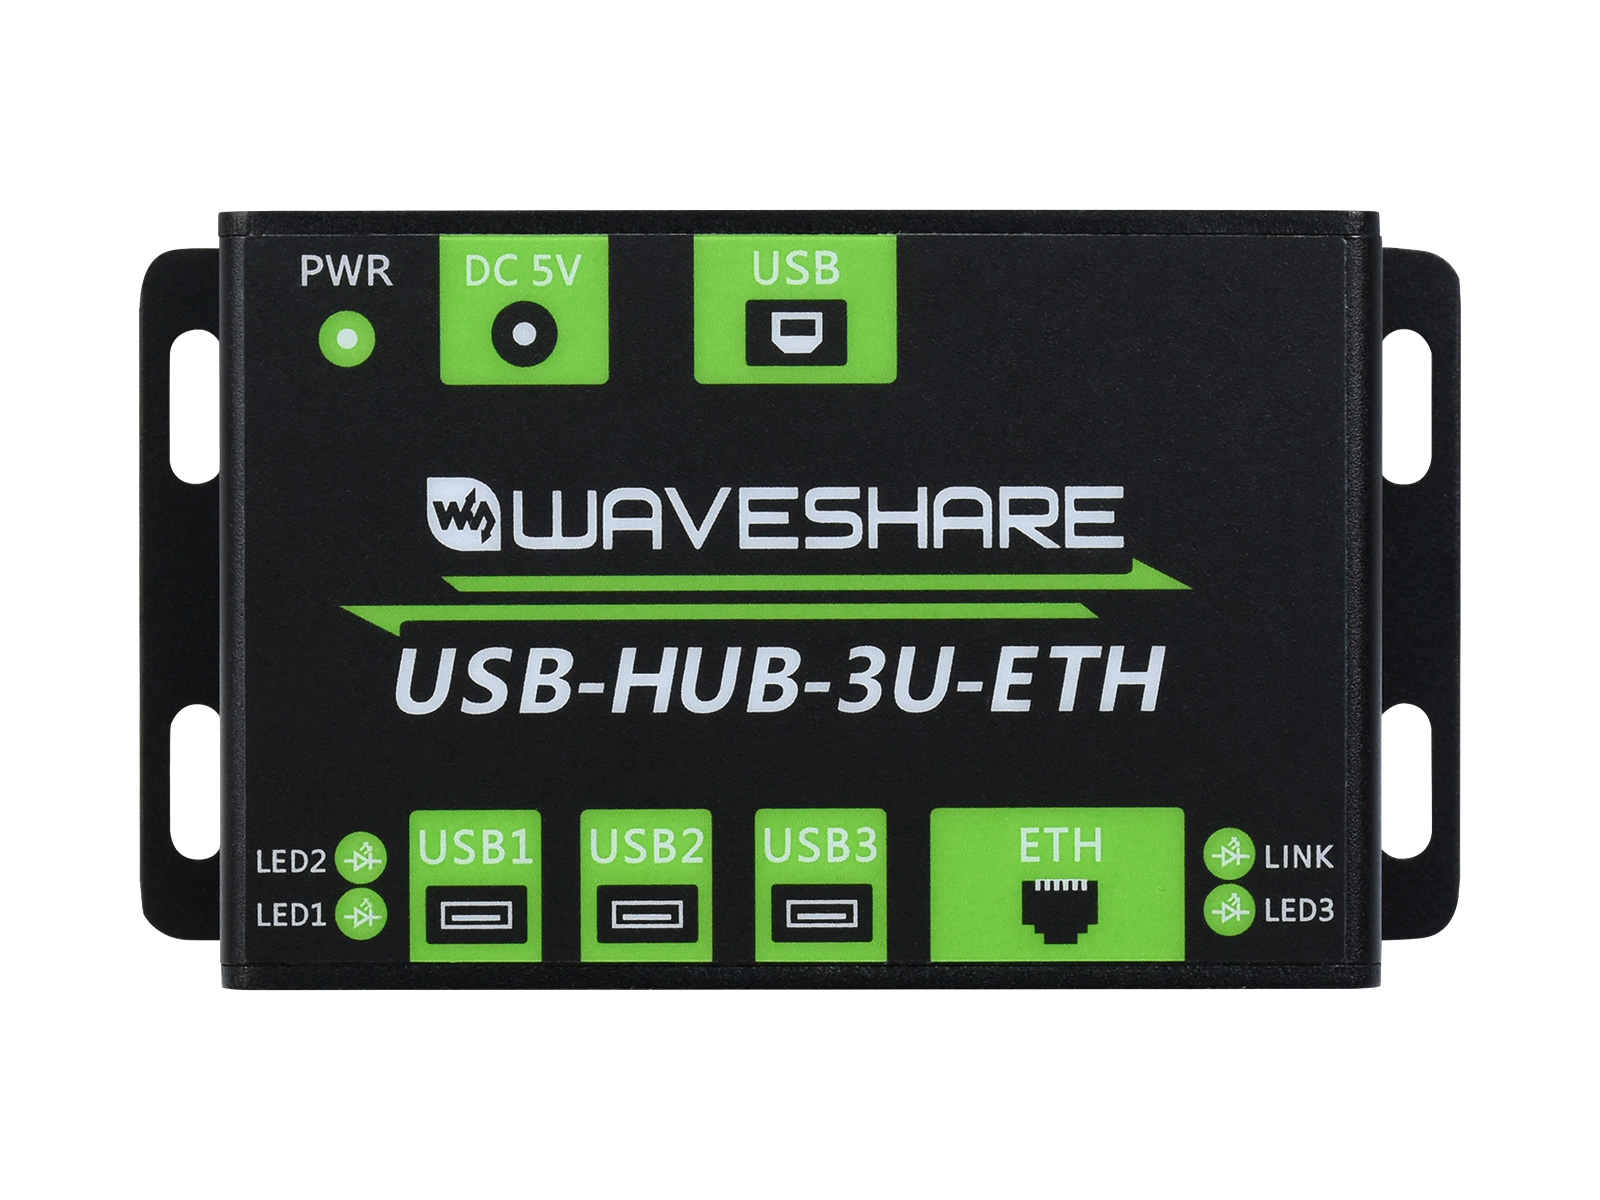 USB-HUB-3U-ETH-EU, Промышленный многофункциональный USB HUB, 3xUSB ports + 100M Ethernet Port